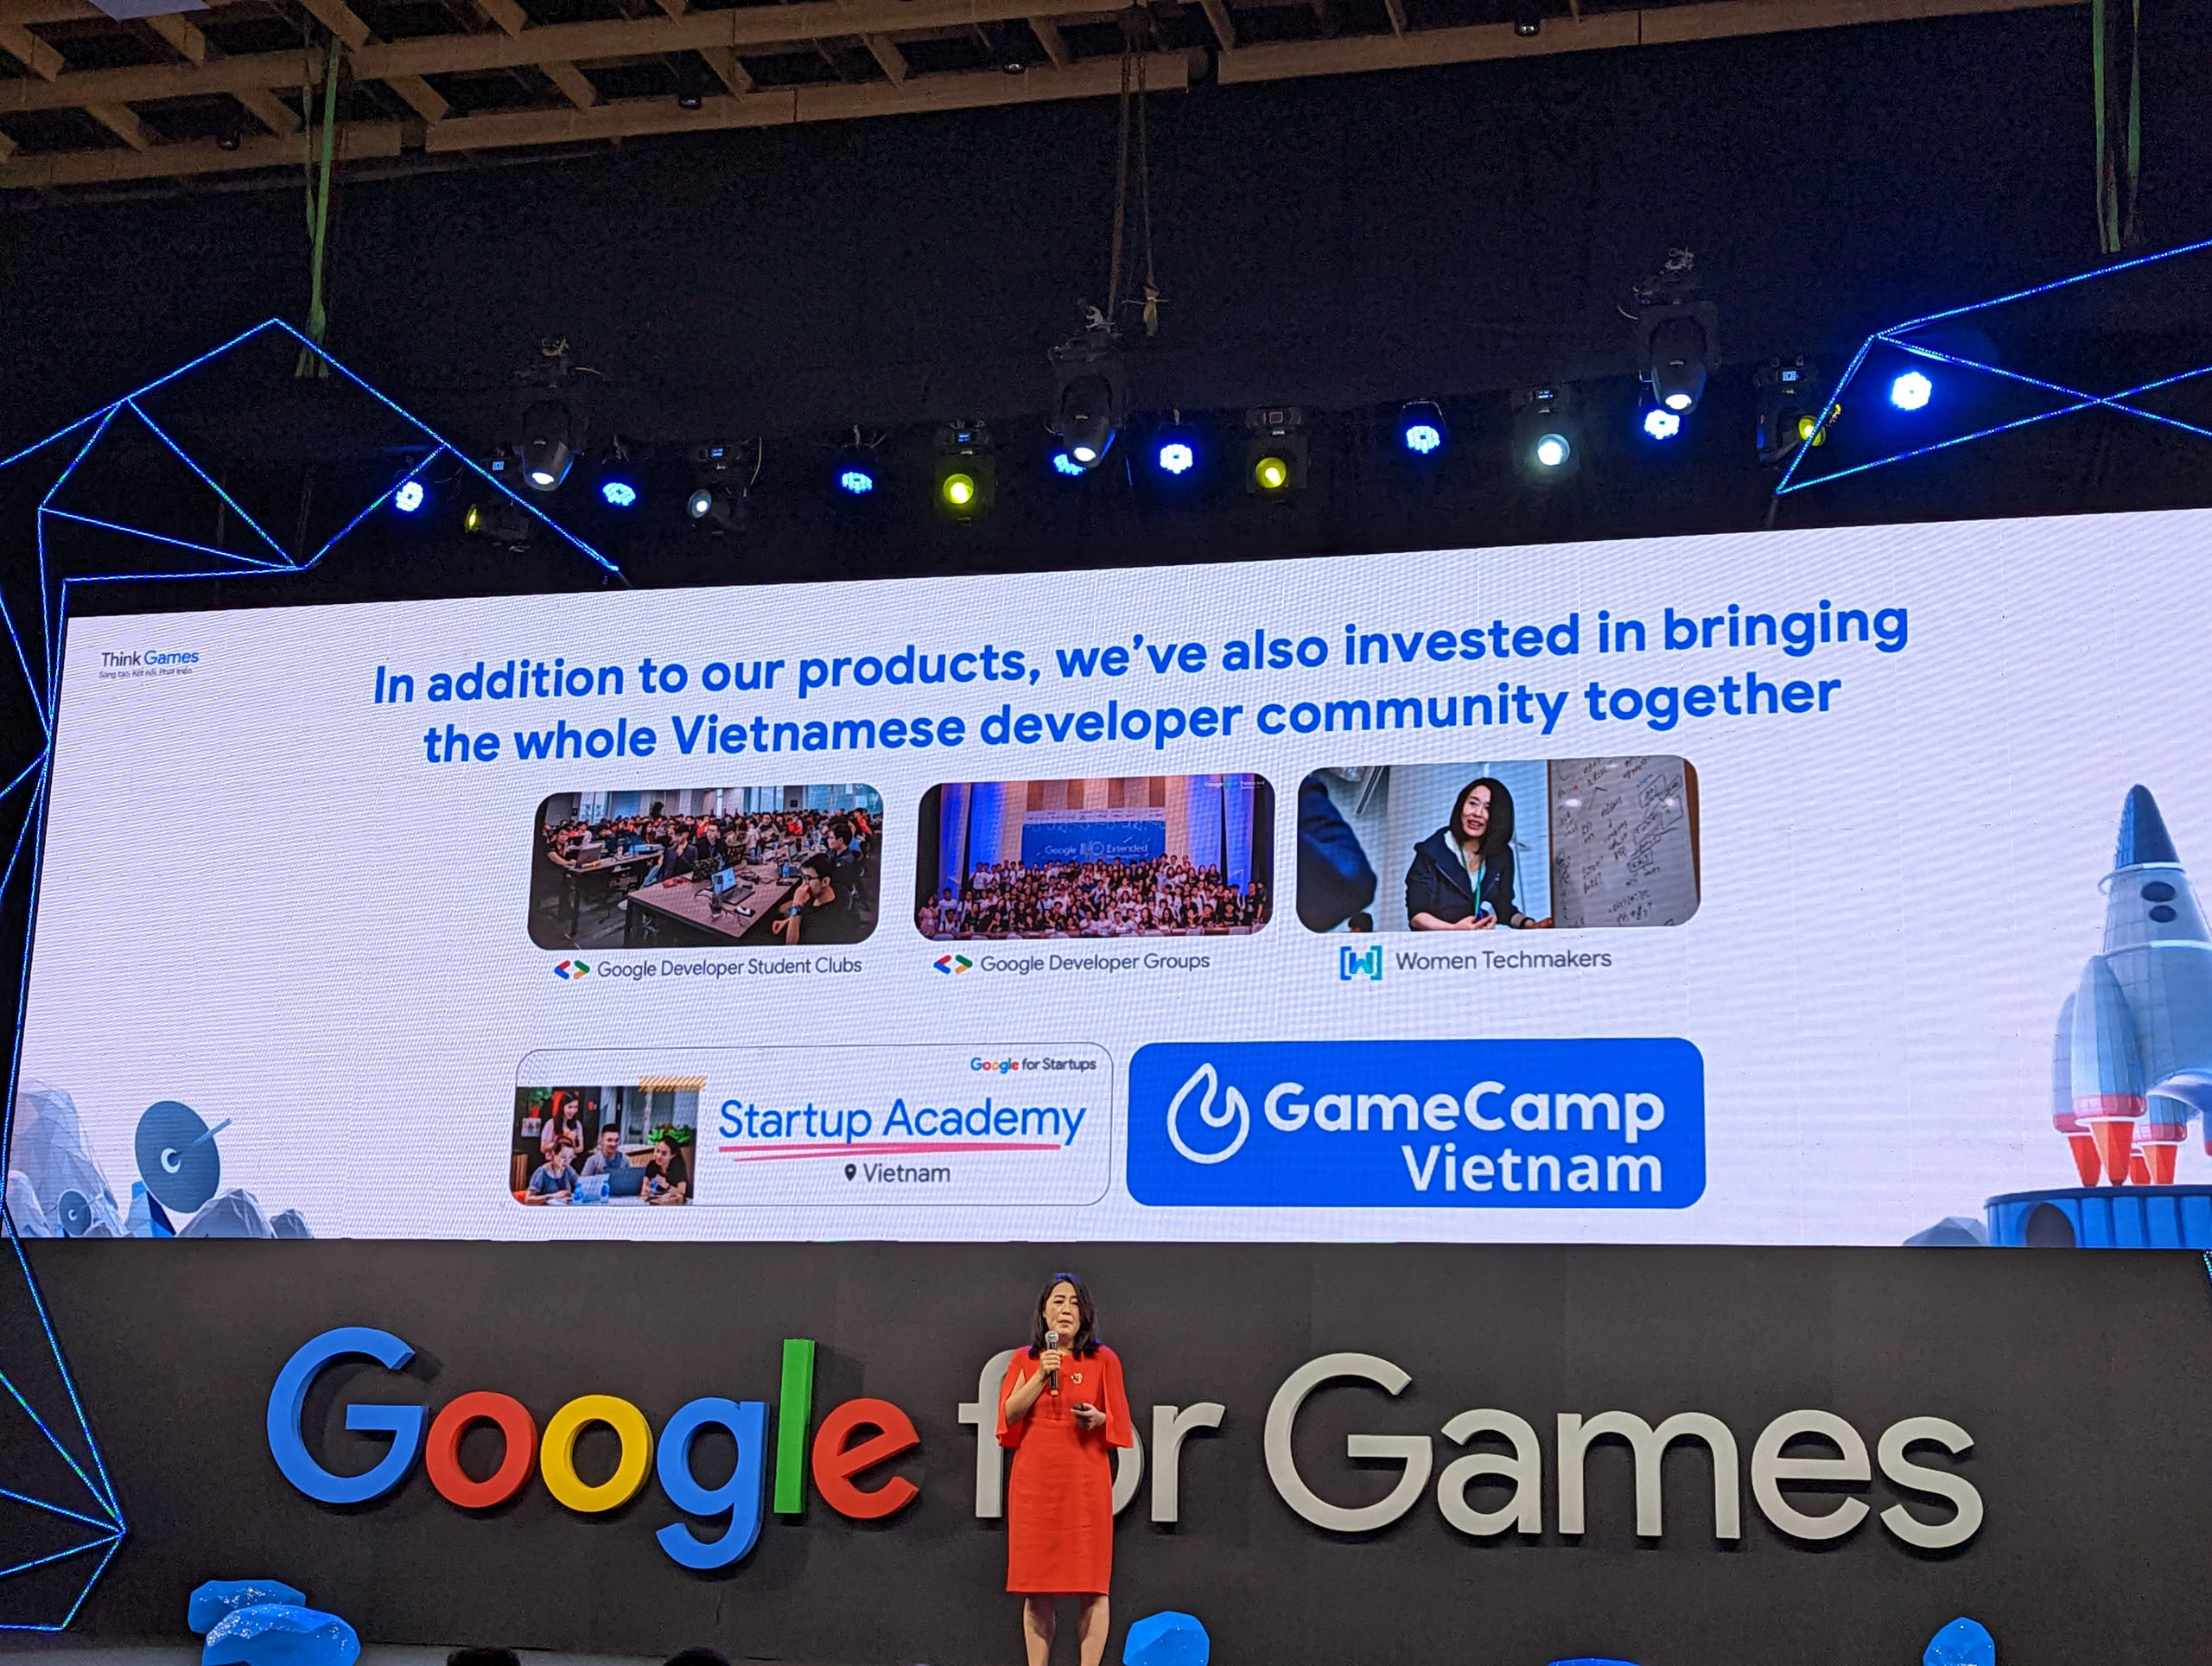 Google Think Games 2022: Cập nhật xu hướng phát triển games